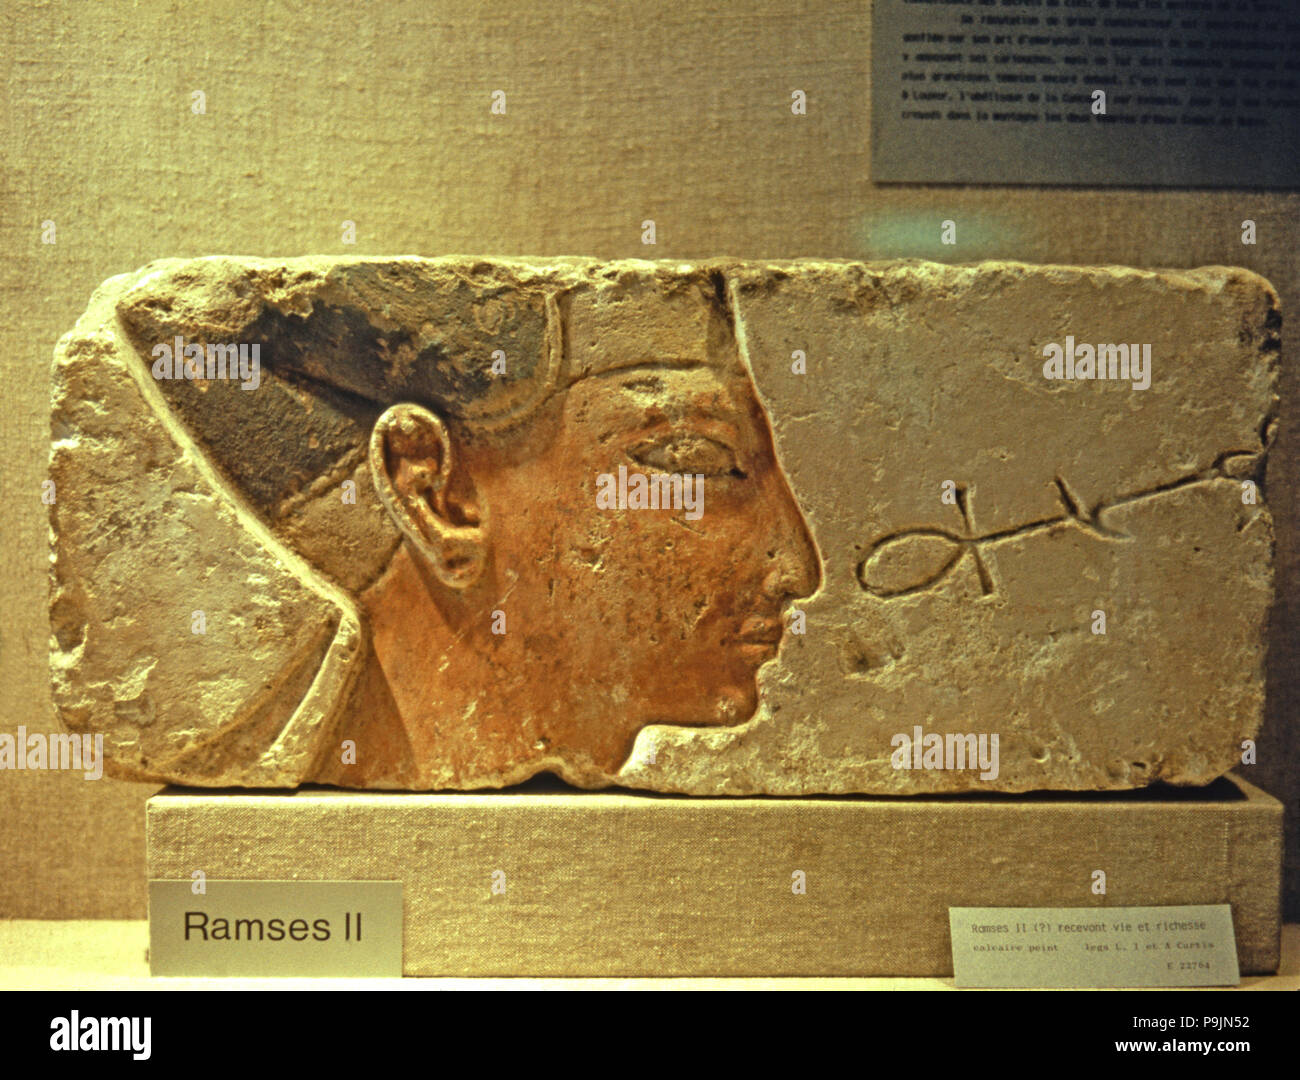 Ramsés II recibir vida y riqueza, mostrando sólo el fragmento de cabeza, realizados en policromada limest… Foto de stock